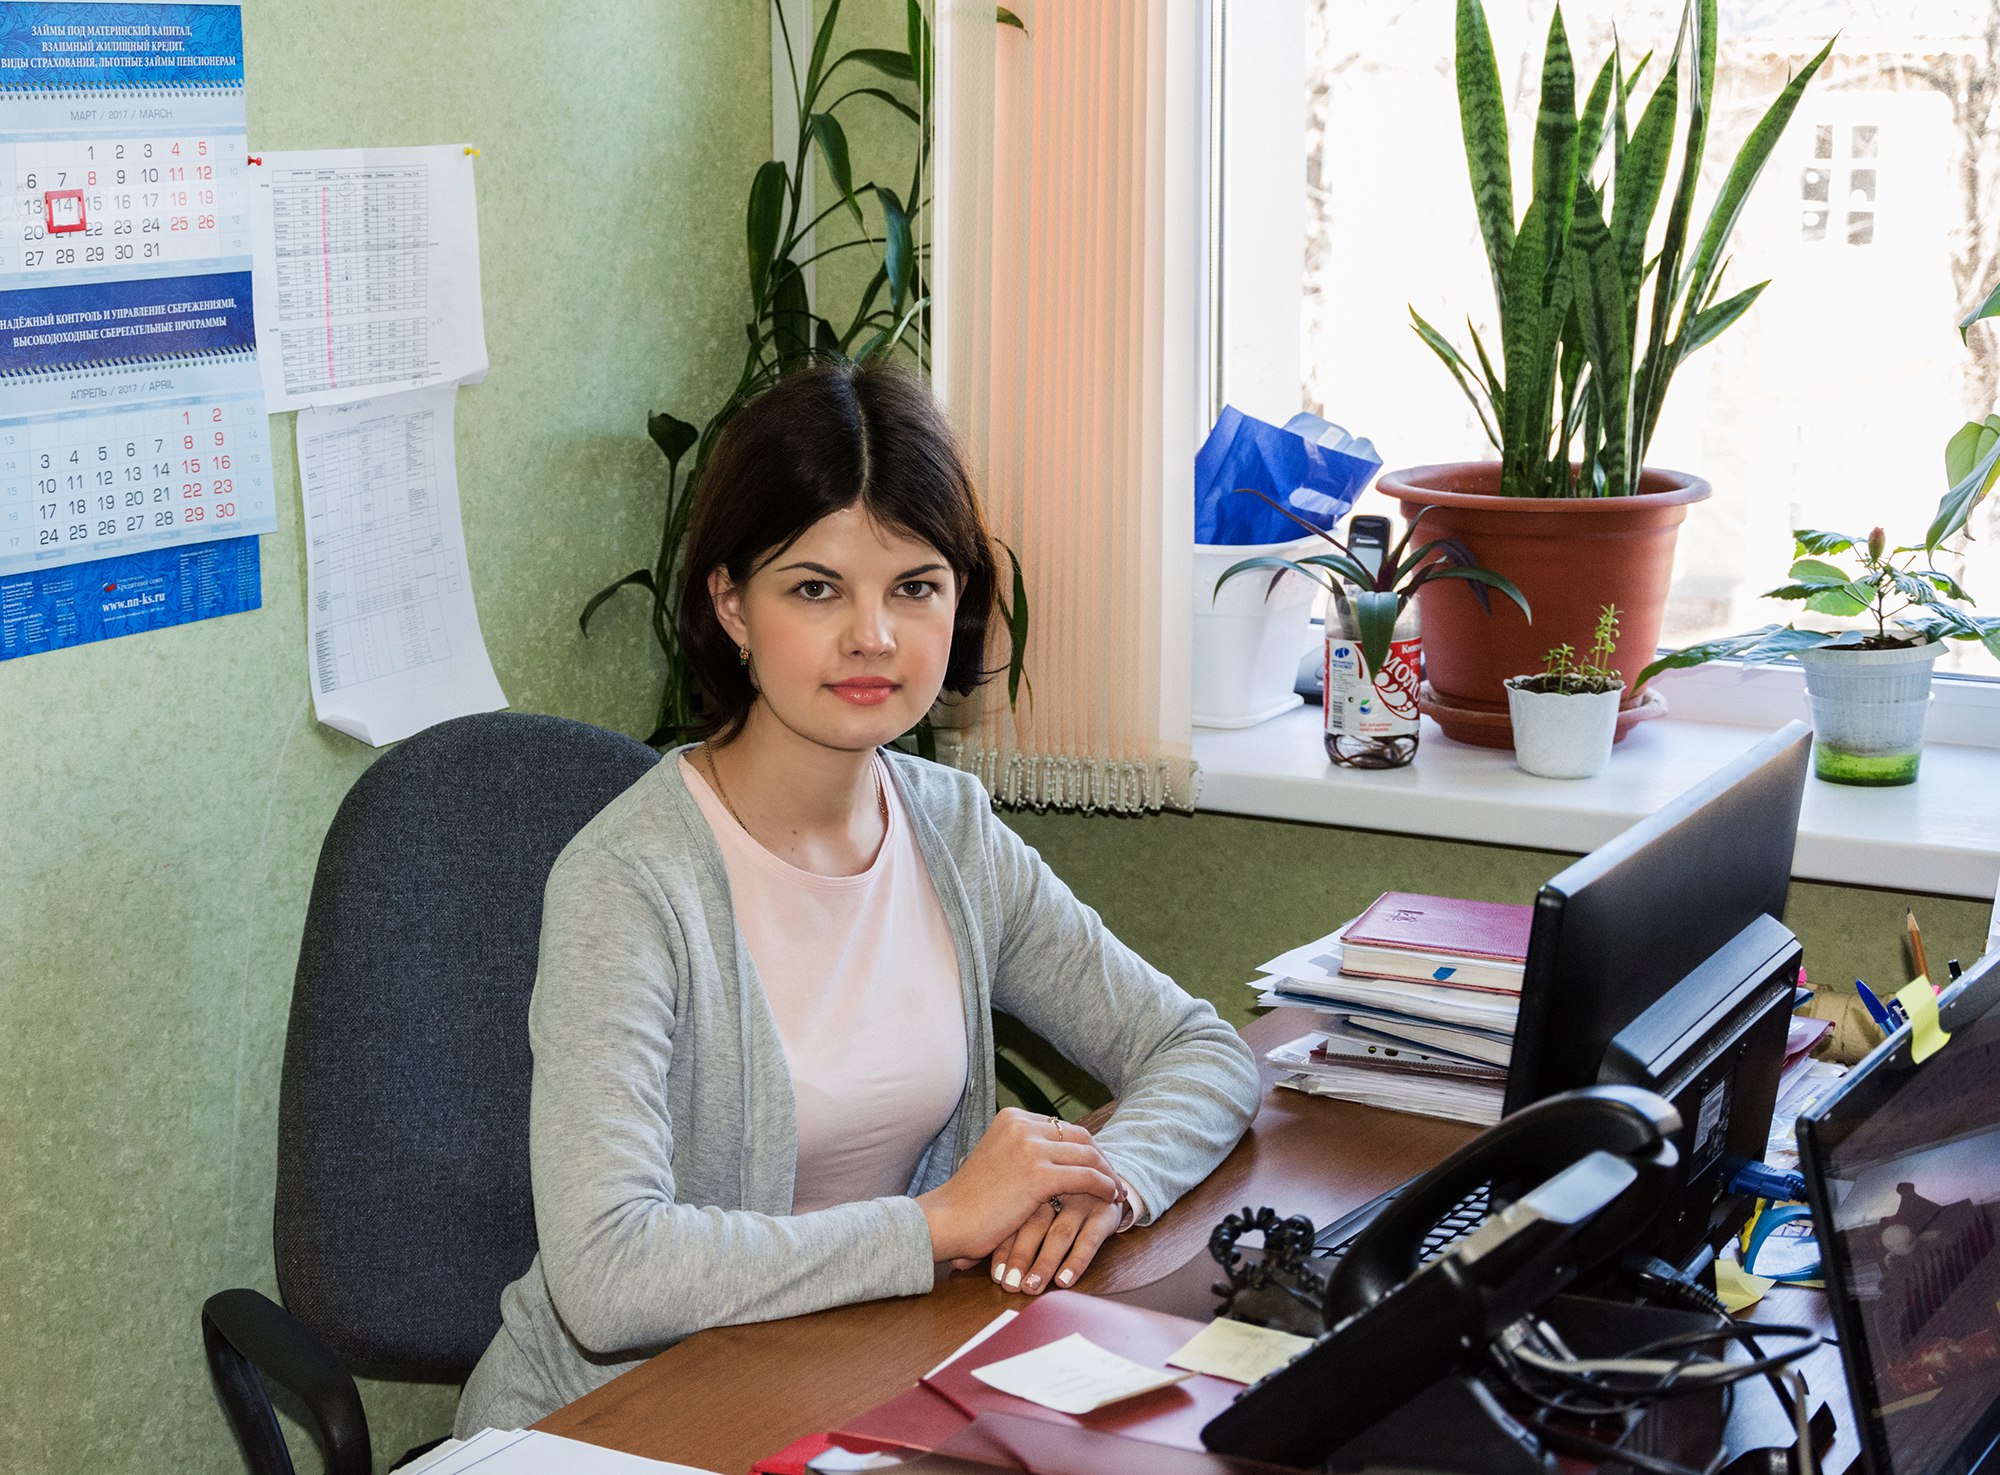 Финансовый менеджер офиса Нижегородского кредитного союза в городском округе город Бор, в котором обналичивают материнский капитал до 3 лет